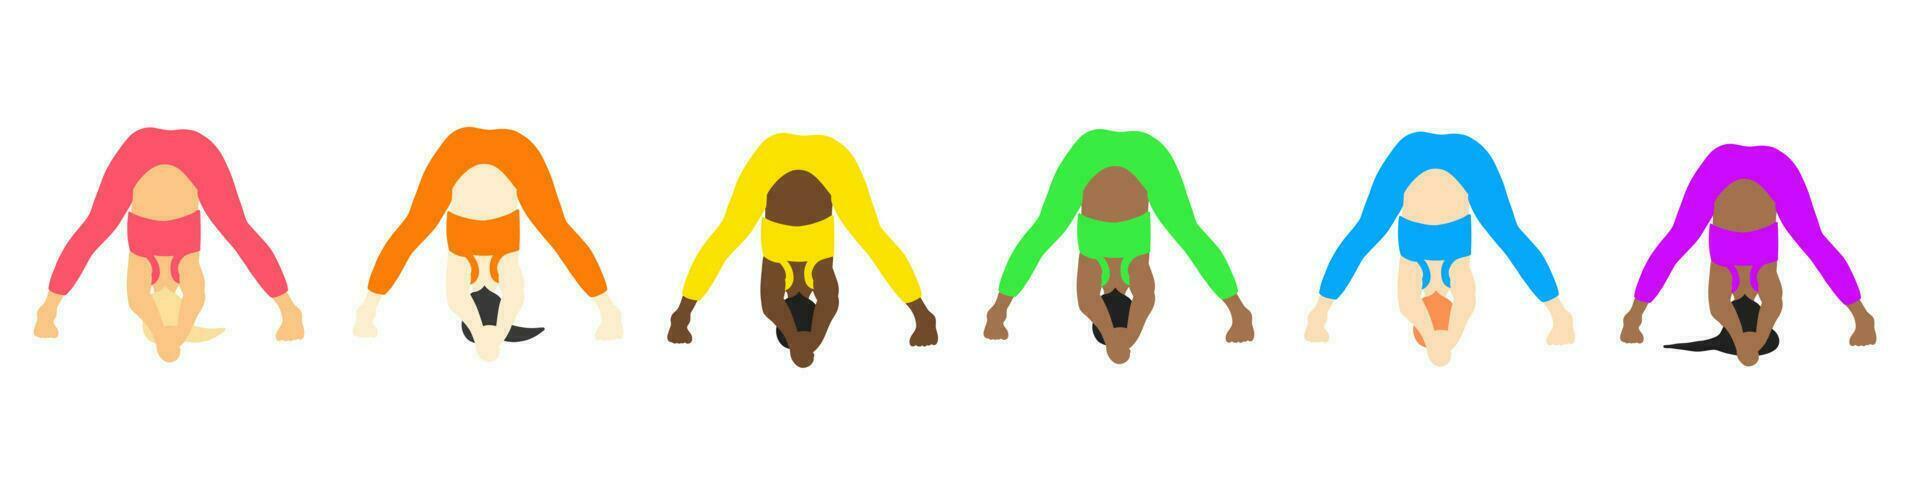 Yoga-Posen-Sammlung. europäisch, afrikanisch, asiatisch. weibliches frau mädchen. vektorillustration im flachen stil der karikatur lokalisiert auf weißem hintergrund. vektor